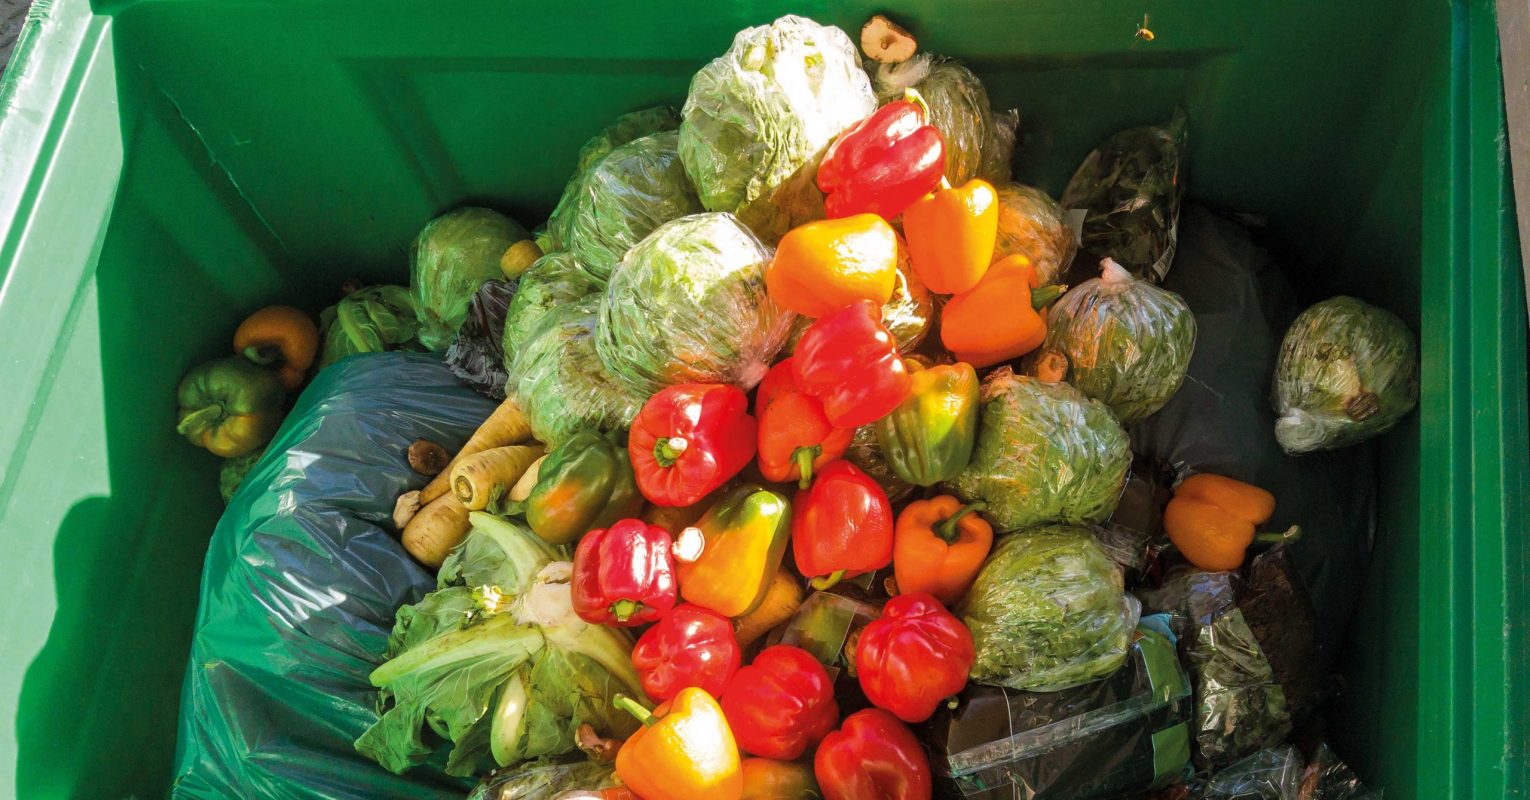 Deutsche Umwelthilfe und foodsharing setzen mit krummem Gemüse Zeichen gegen Lebensmittelverschwendung